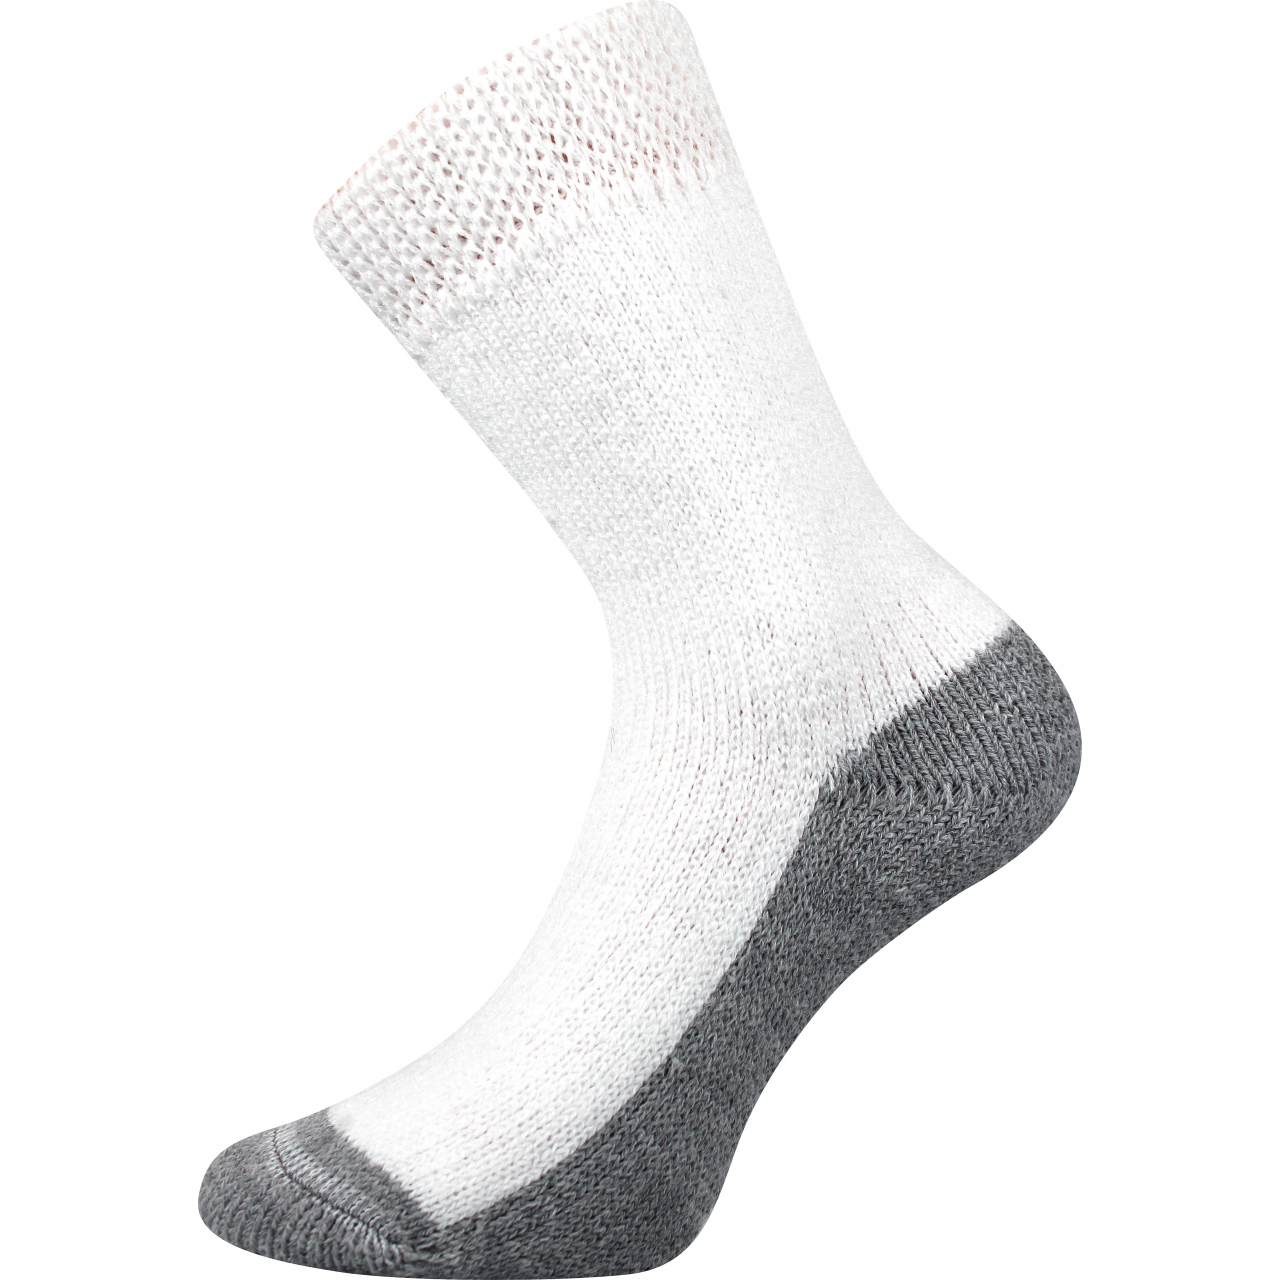 Ponožky unisex Boma Spací - bílé, 43-46